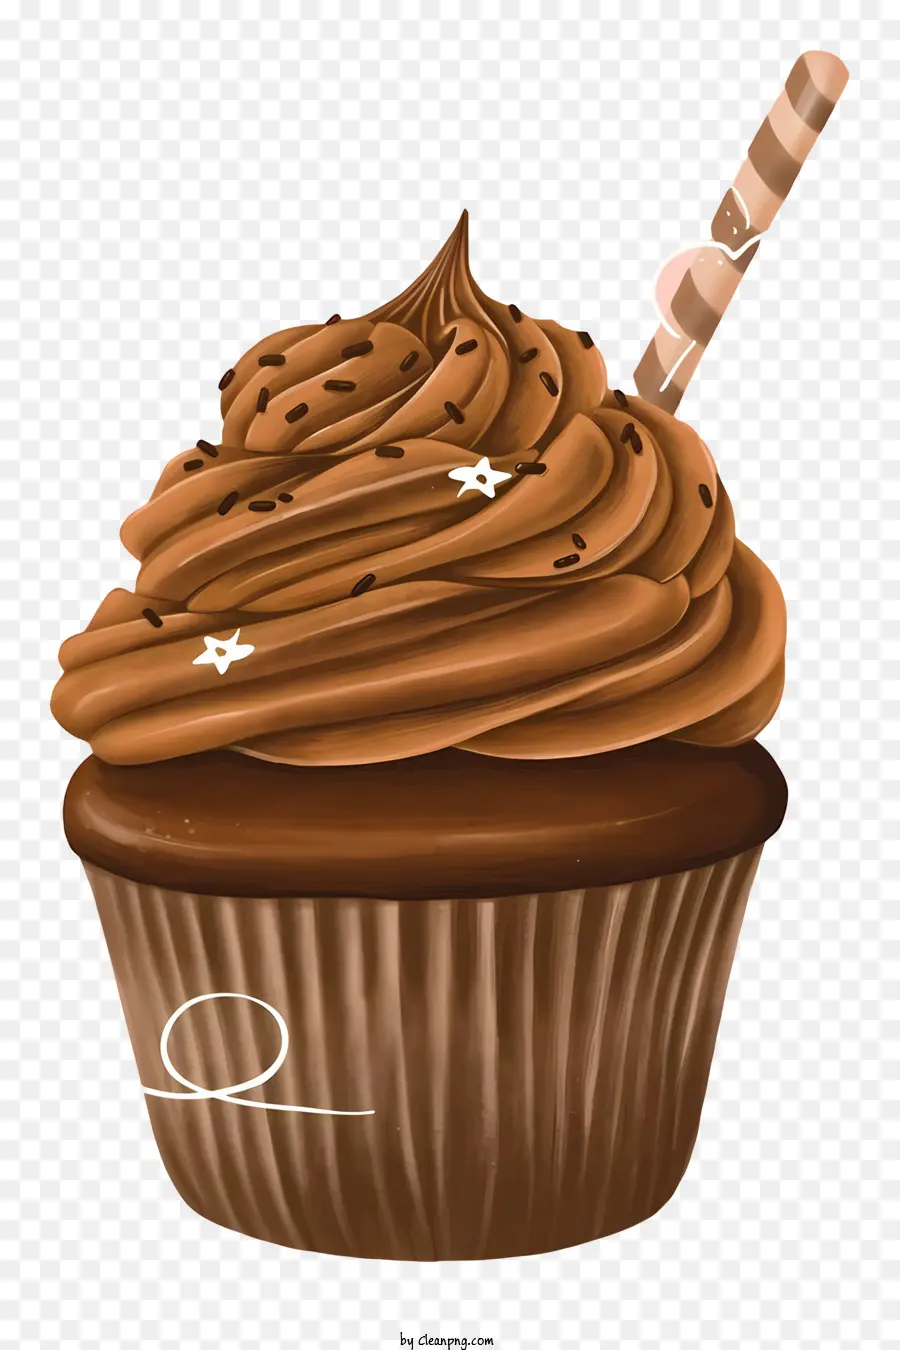 Schokoladen -Cupcake -Cupcake mit Zuckerguss Erdbeer -Cupcake Schokoladen -Zuckerguss -Cupcake mit Erdbeer - Schokoladen -Cupcake mit Erdbeer auf schwarzem Hintergrund